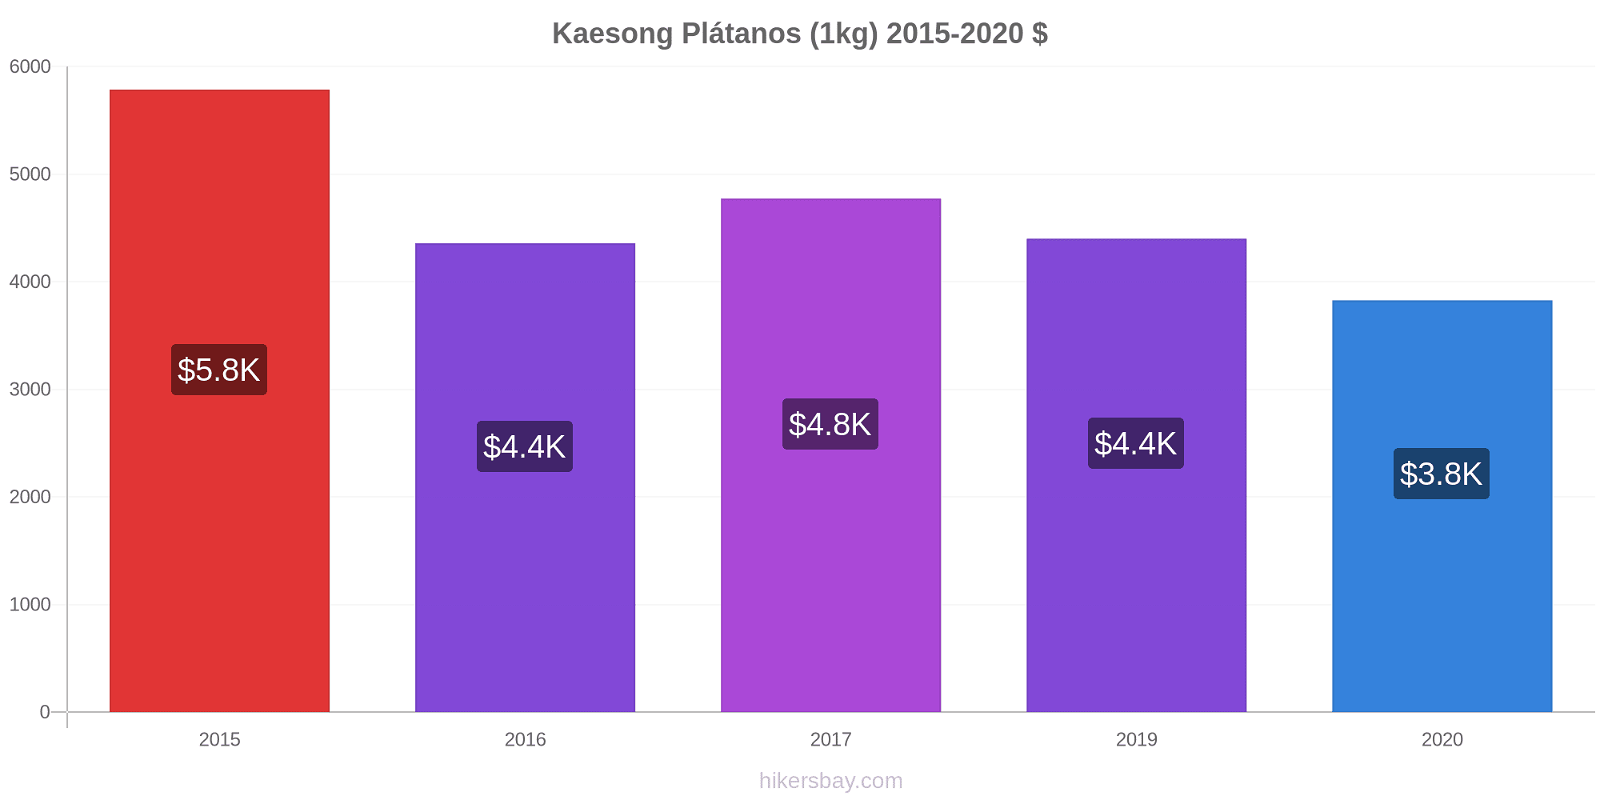 Kaesong cambios de precios Plátano (1kg) hikersbay.com